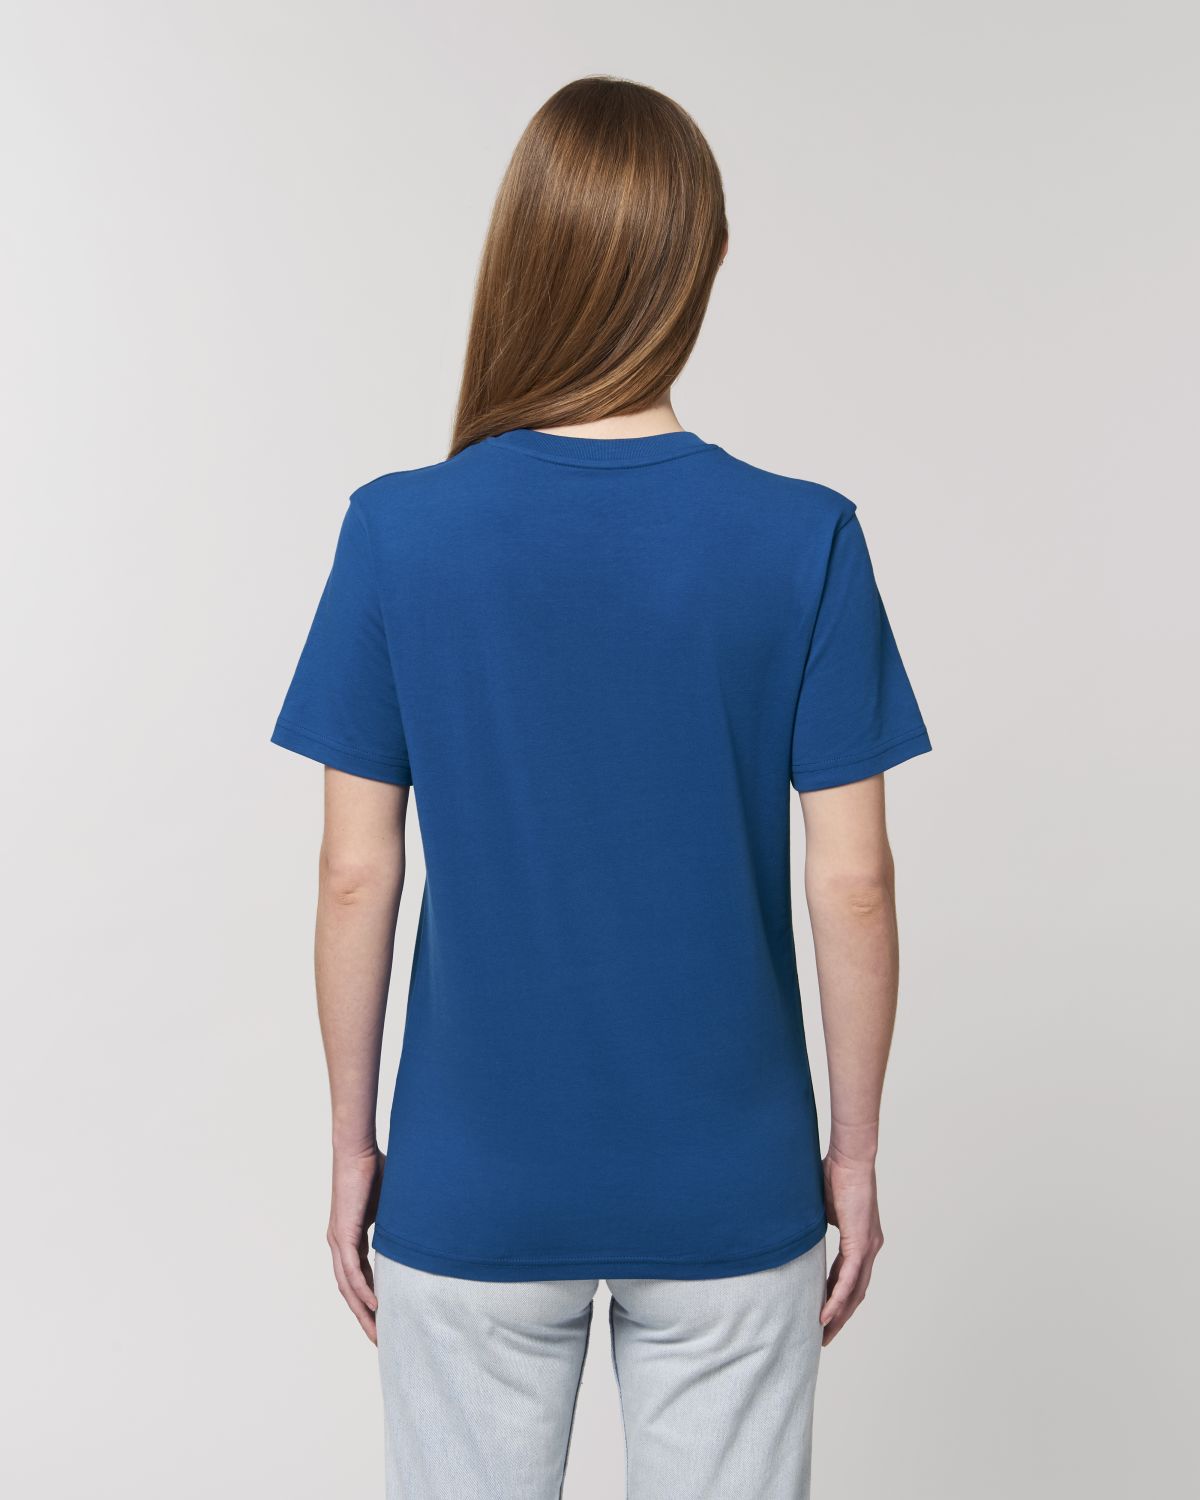 Blaue unsterbliche Frau T-Shirt - DP